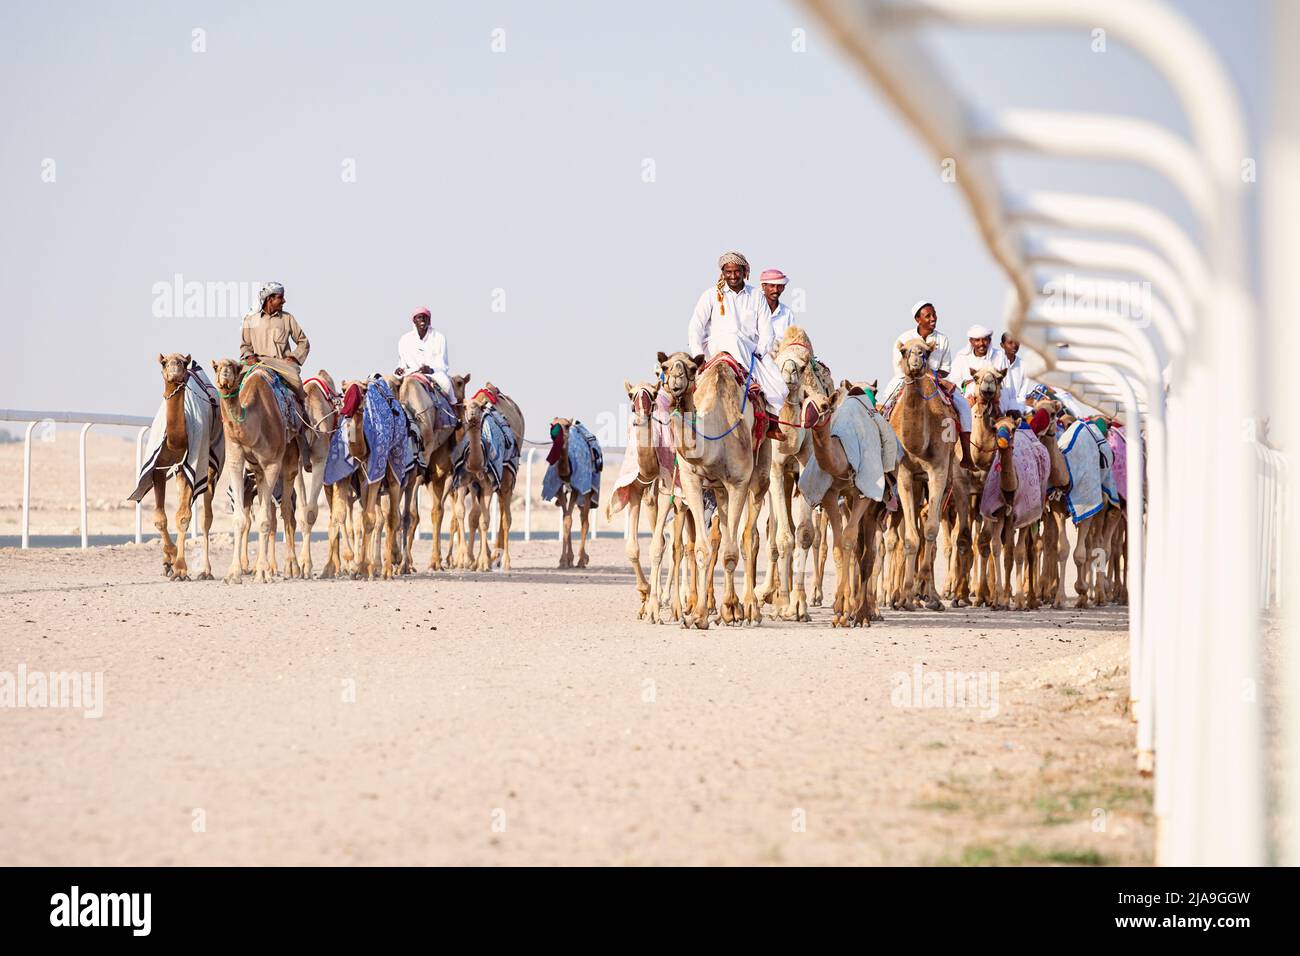 Exercising camels at the Camel Racetrack, Al-Shahaniya, Qatar. Stock Photo